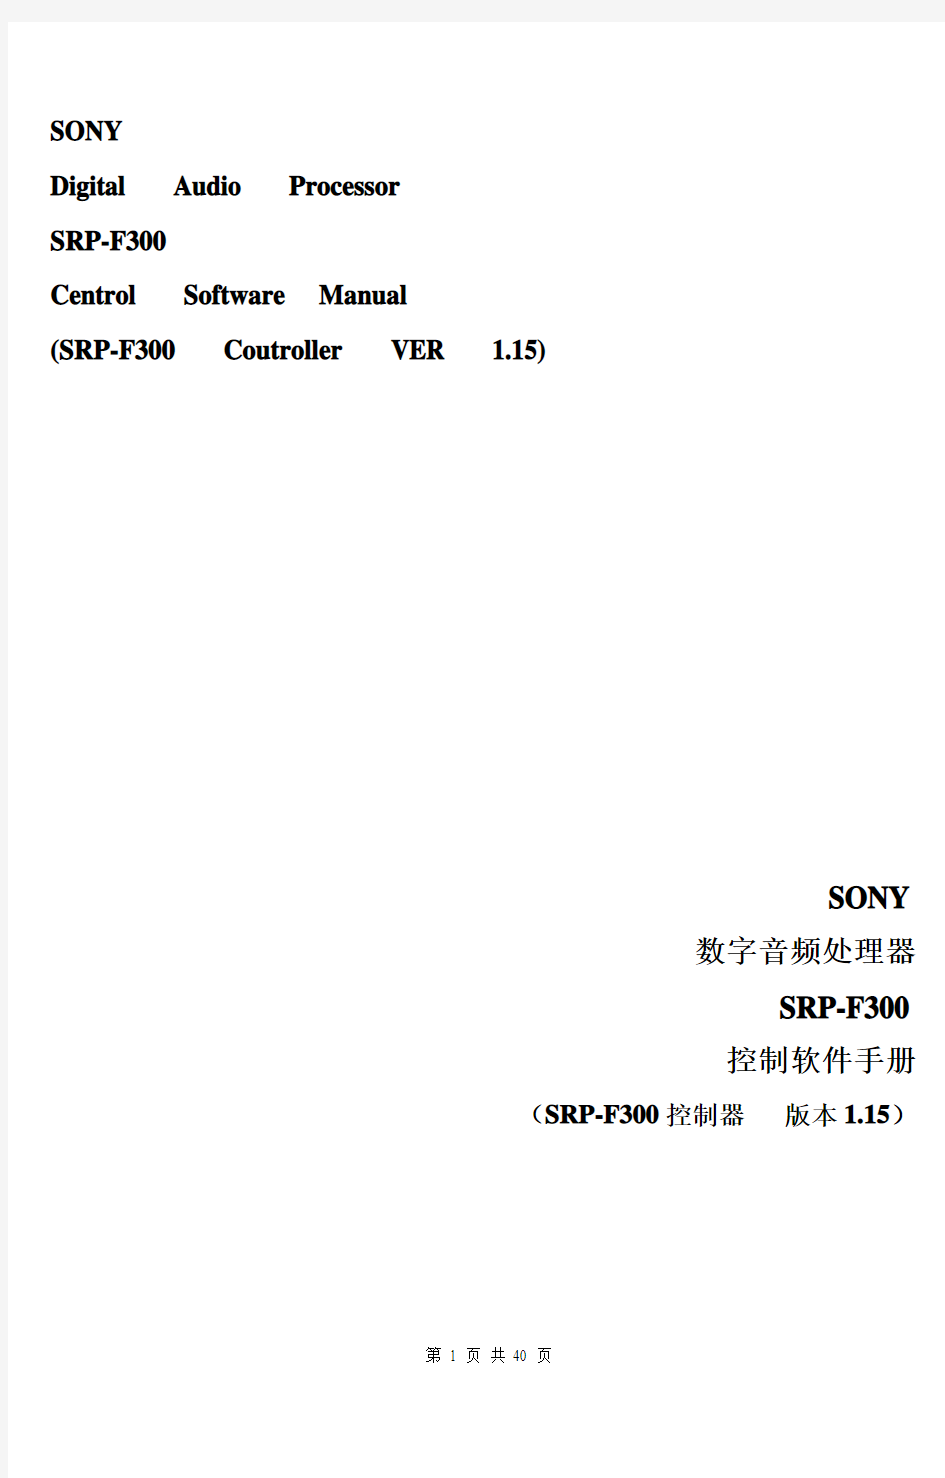 SONY SRP-F300控制软件手册